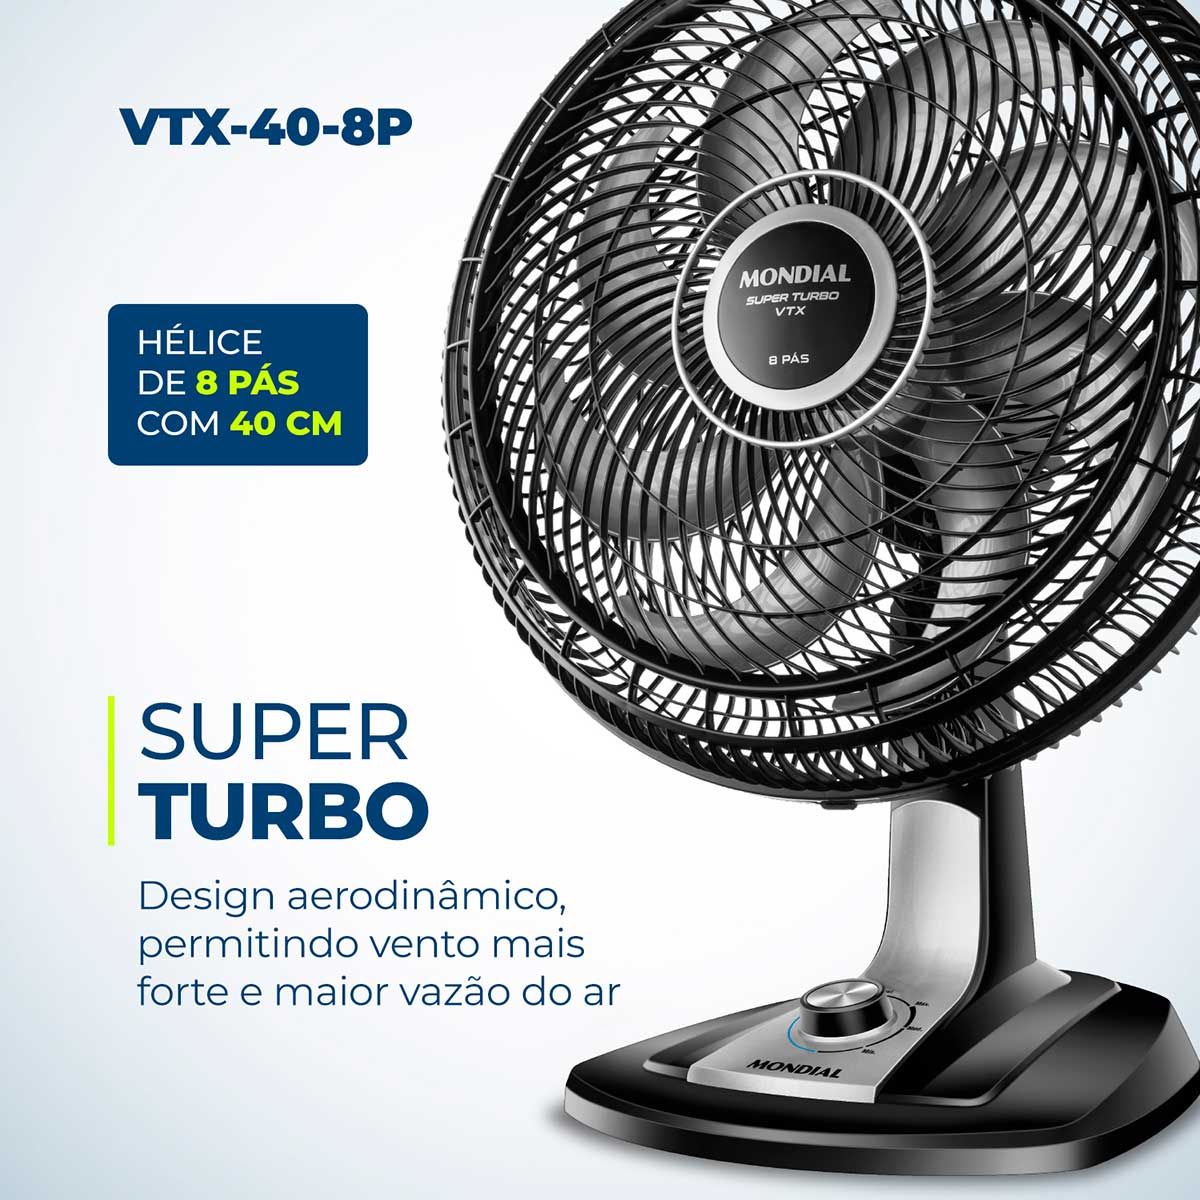 ventilador-de-mesa-mondial-super-turbo-vtx-40-8p-40-cm-6-pas-3-velocidades-preto-220-v-2.jpg